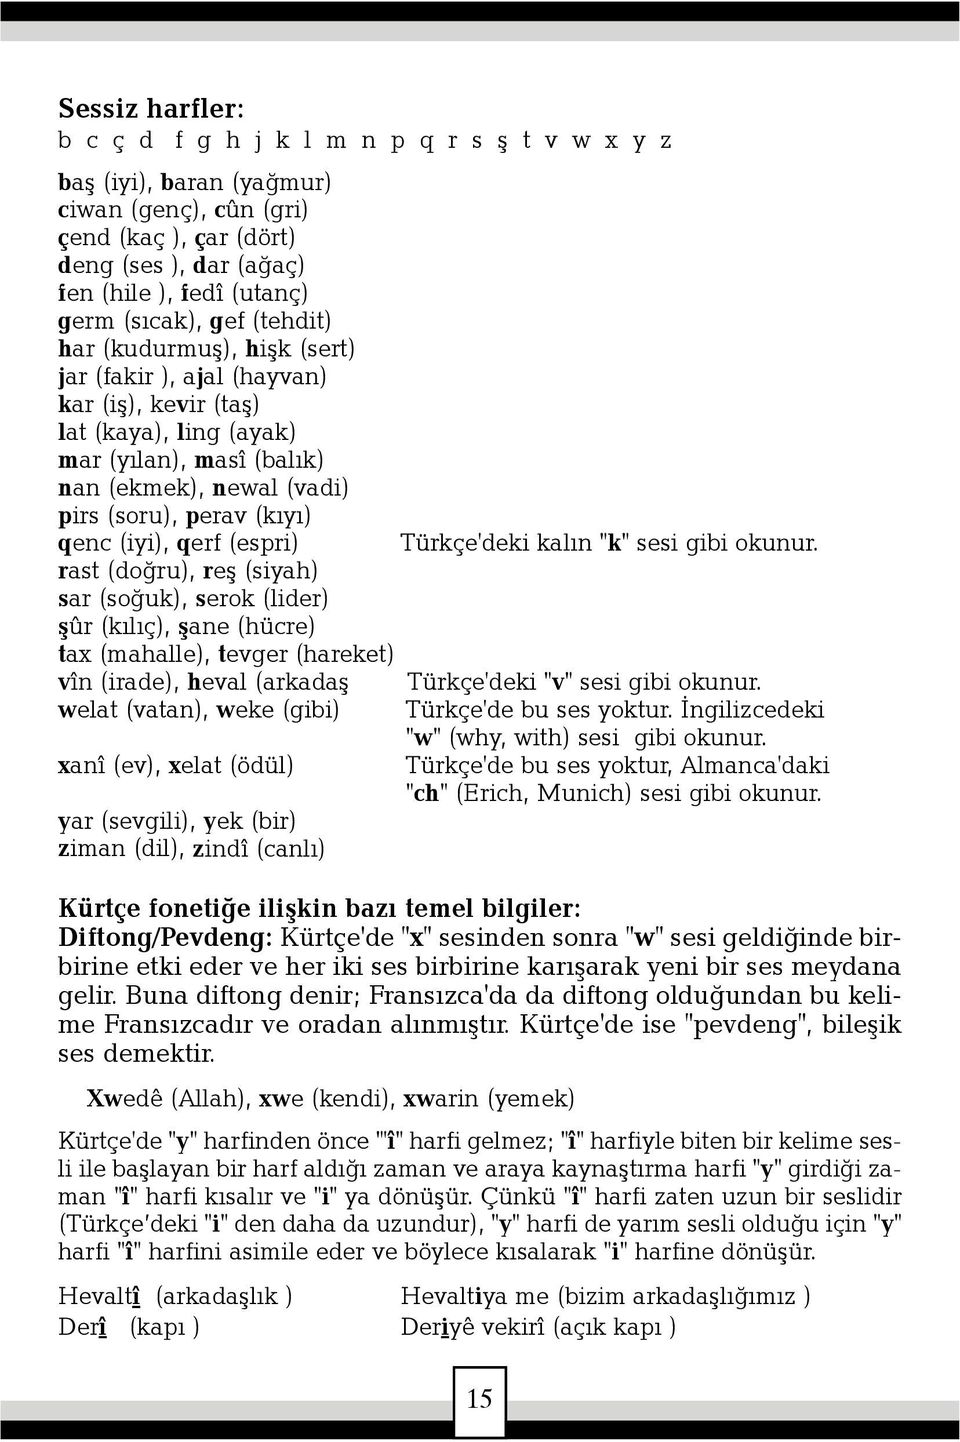 (iyi), qerf (espri) Türkçe'deki kalýn "k" sesi gibi okunur.